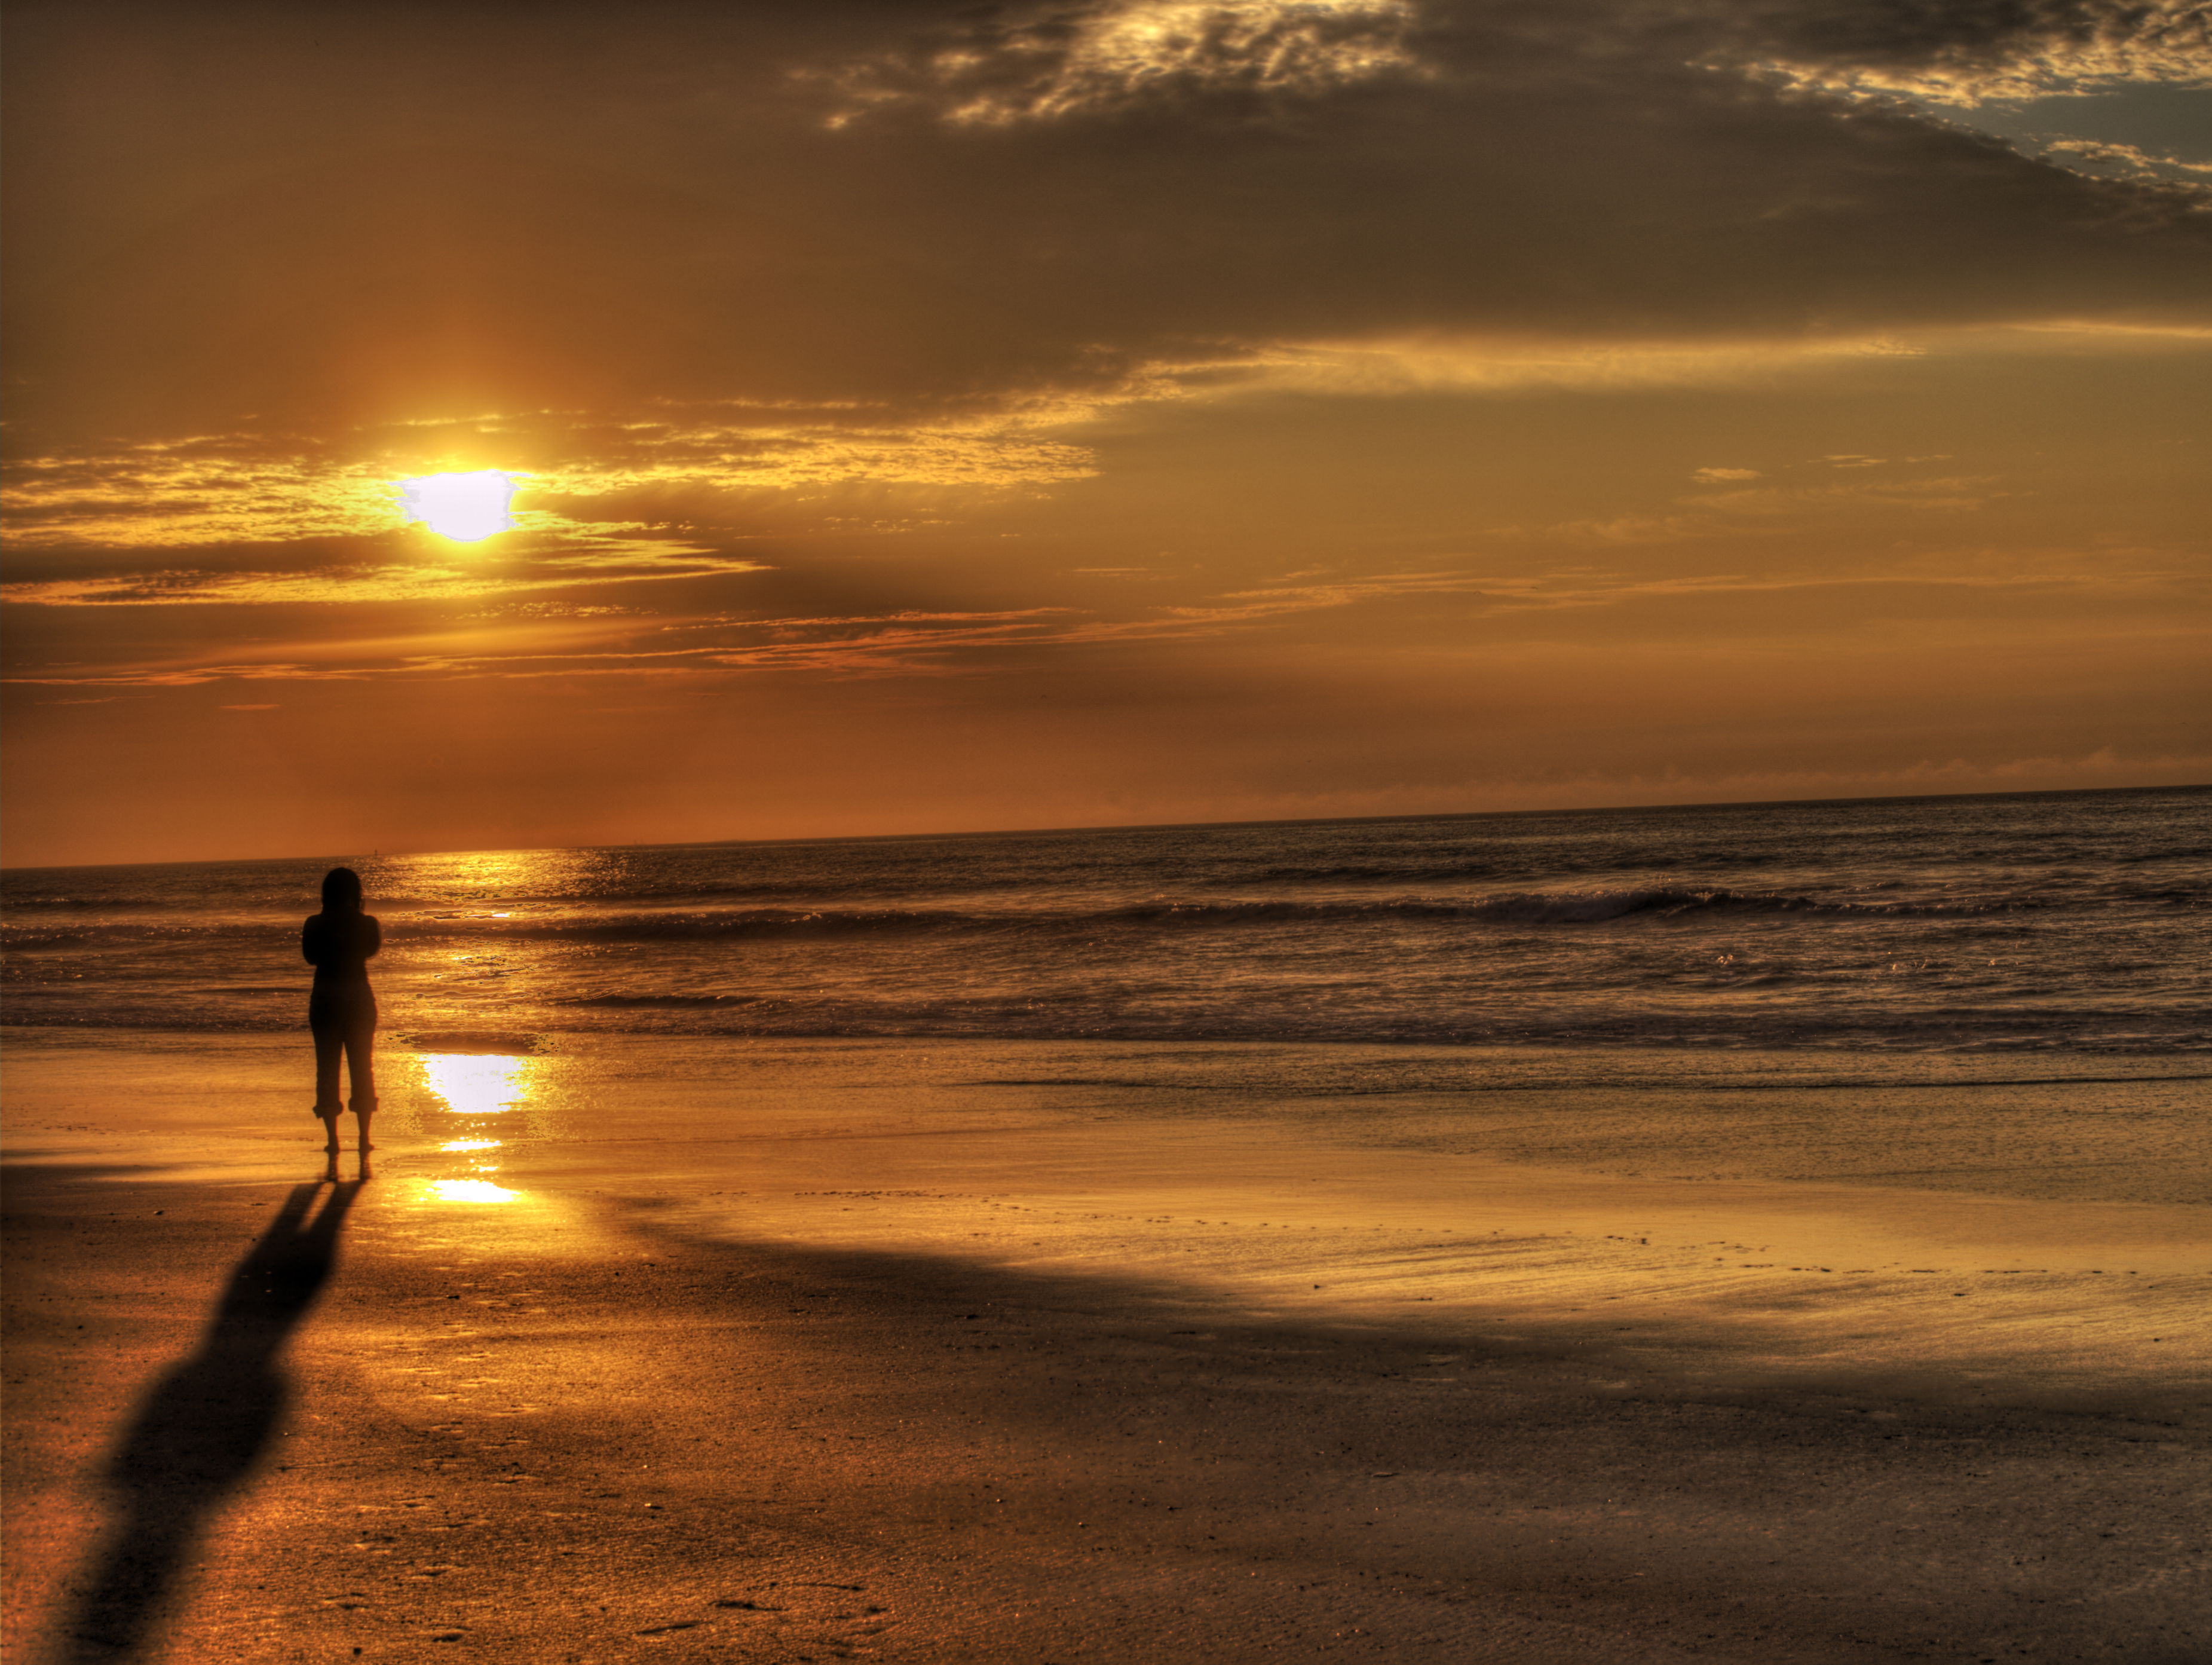 Sunrise on the beach by DarkPhoenix36 on DeviantArt